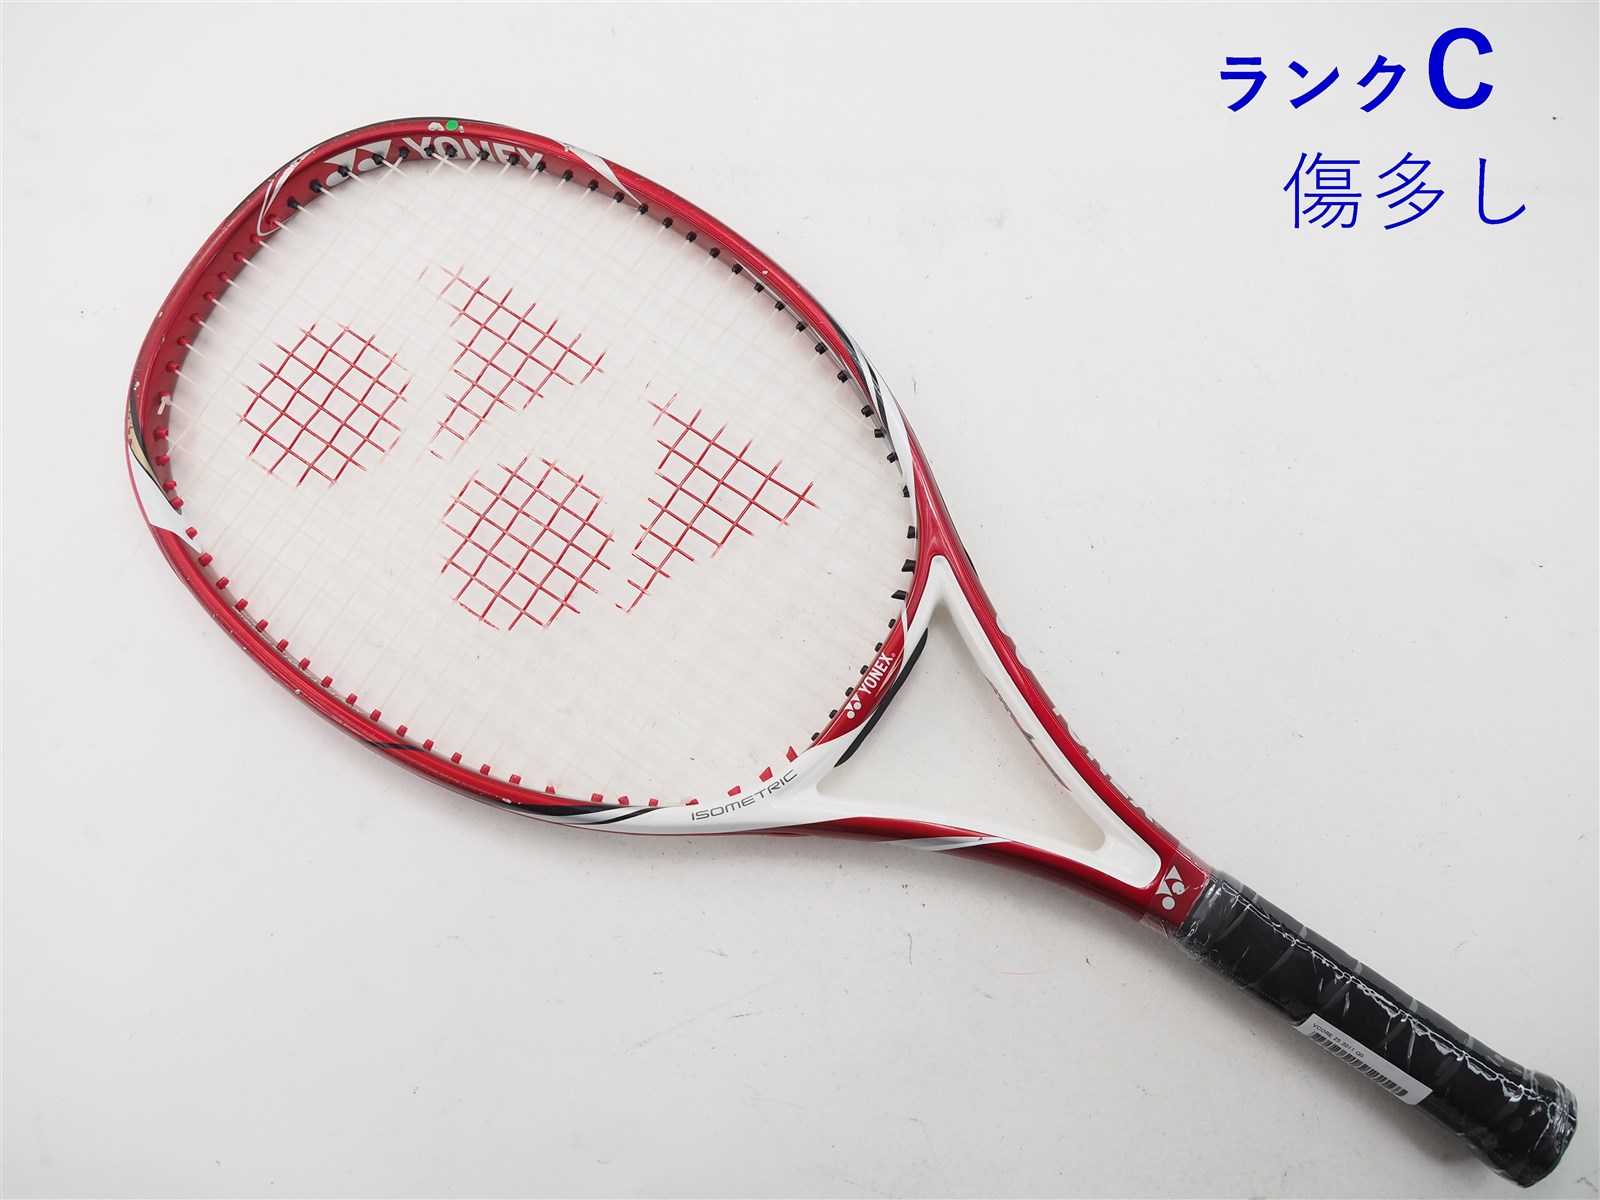 テニスラケット ヨネックス ブイコア 98D 2011年モデル【DEMO】 (G2